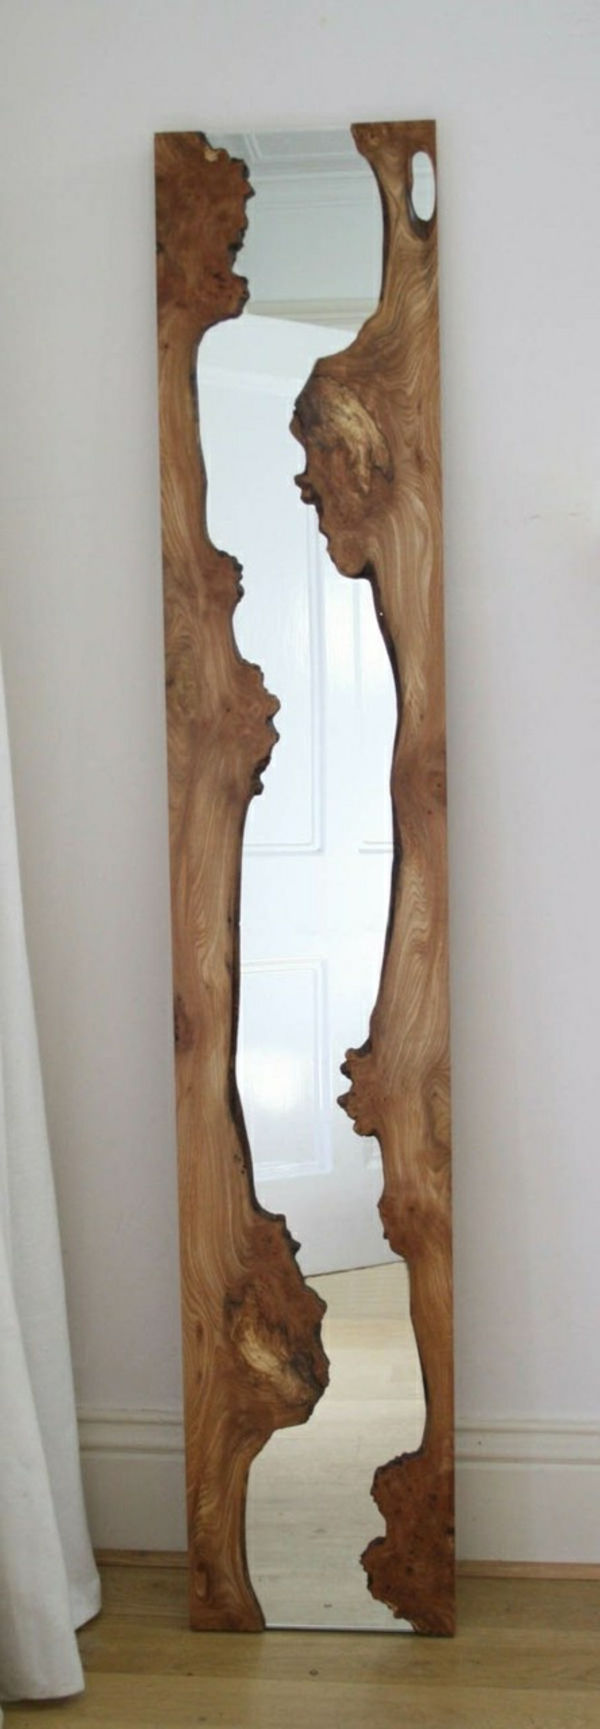 oglinda de tip driftwood cu aspect clasic